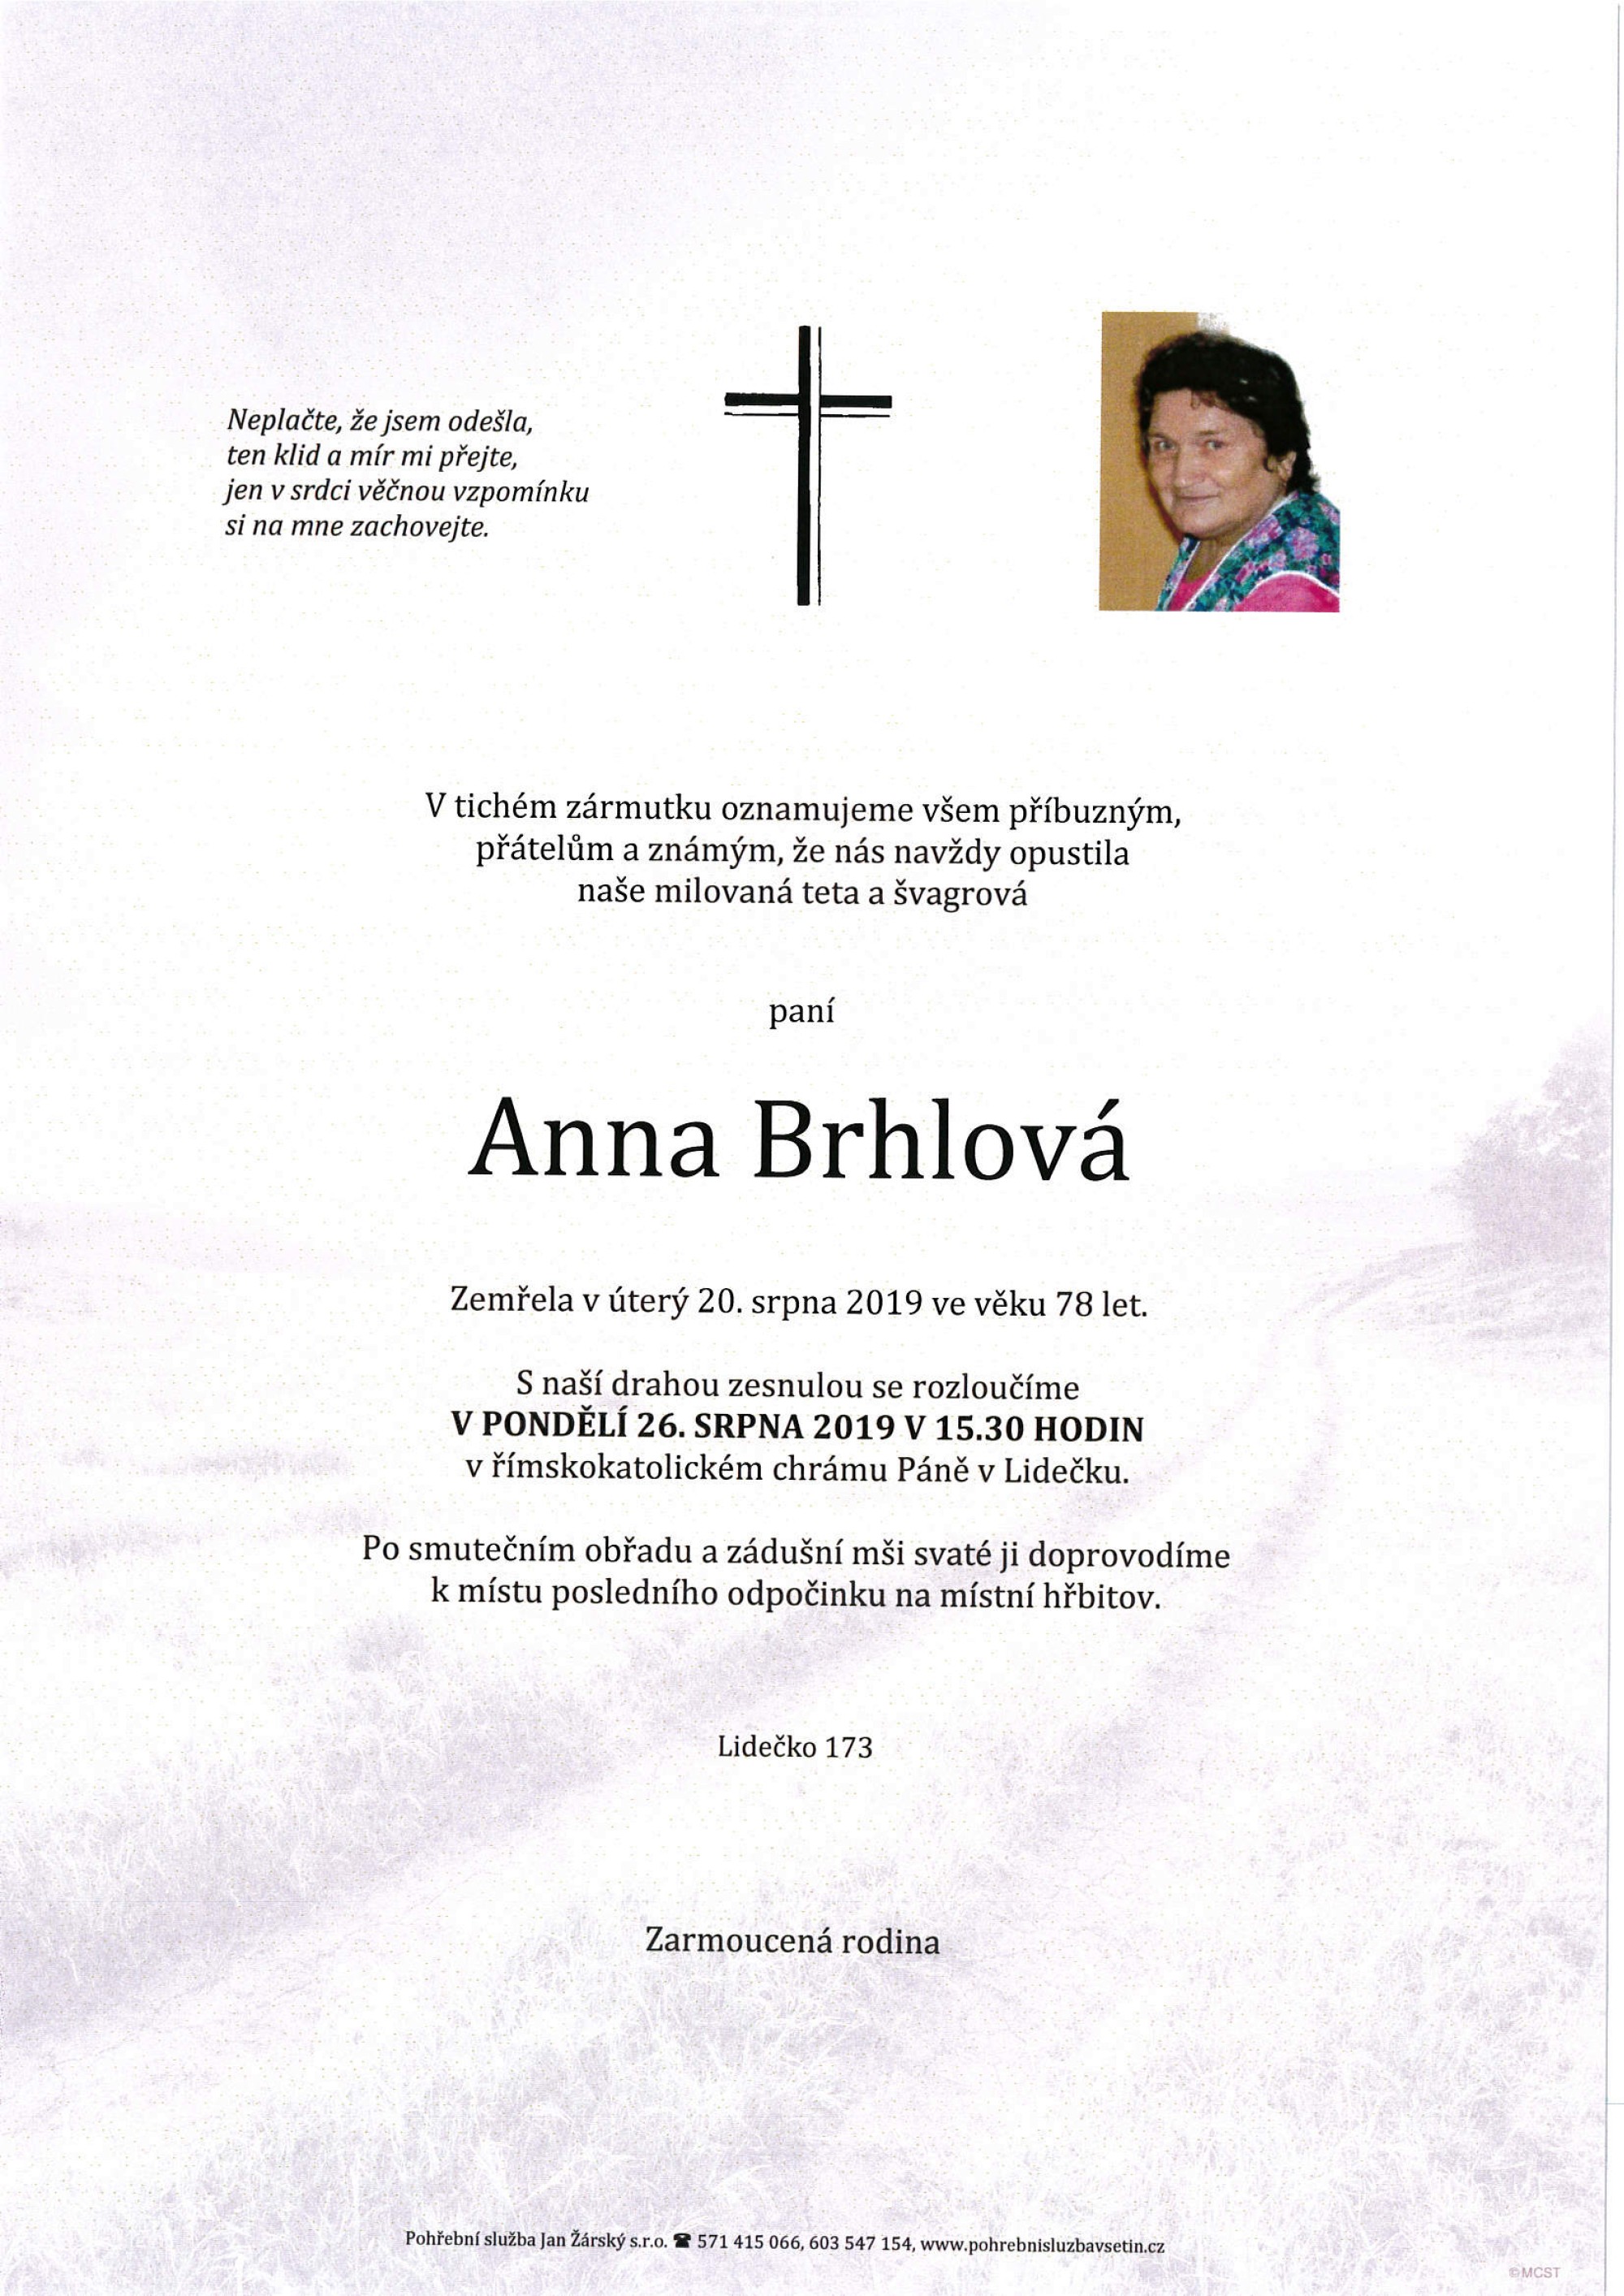 Anna Brhlová